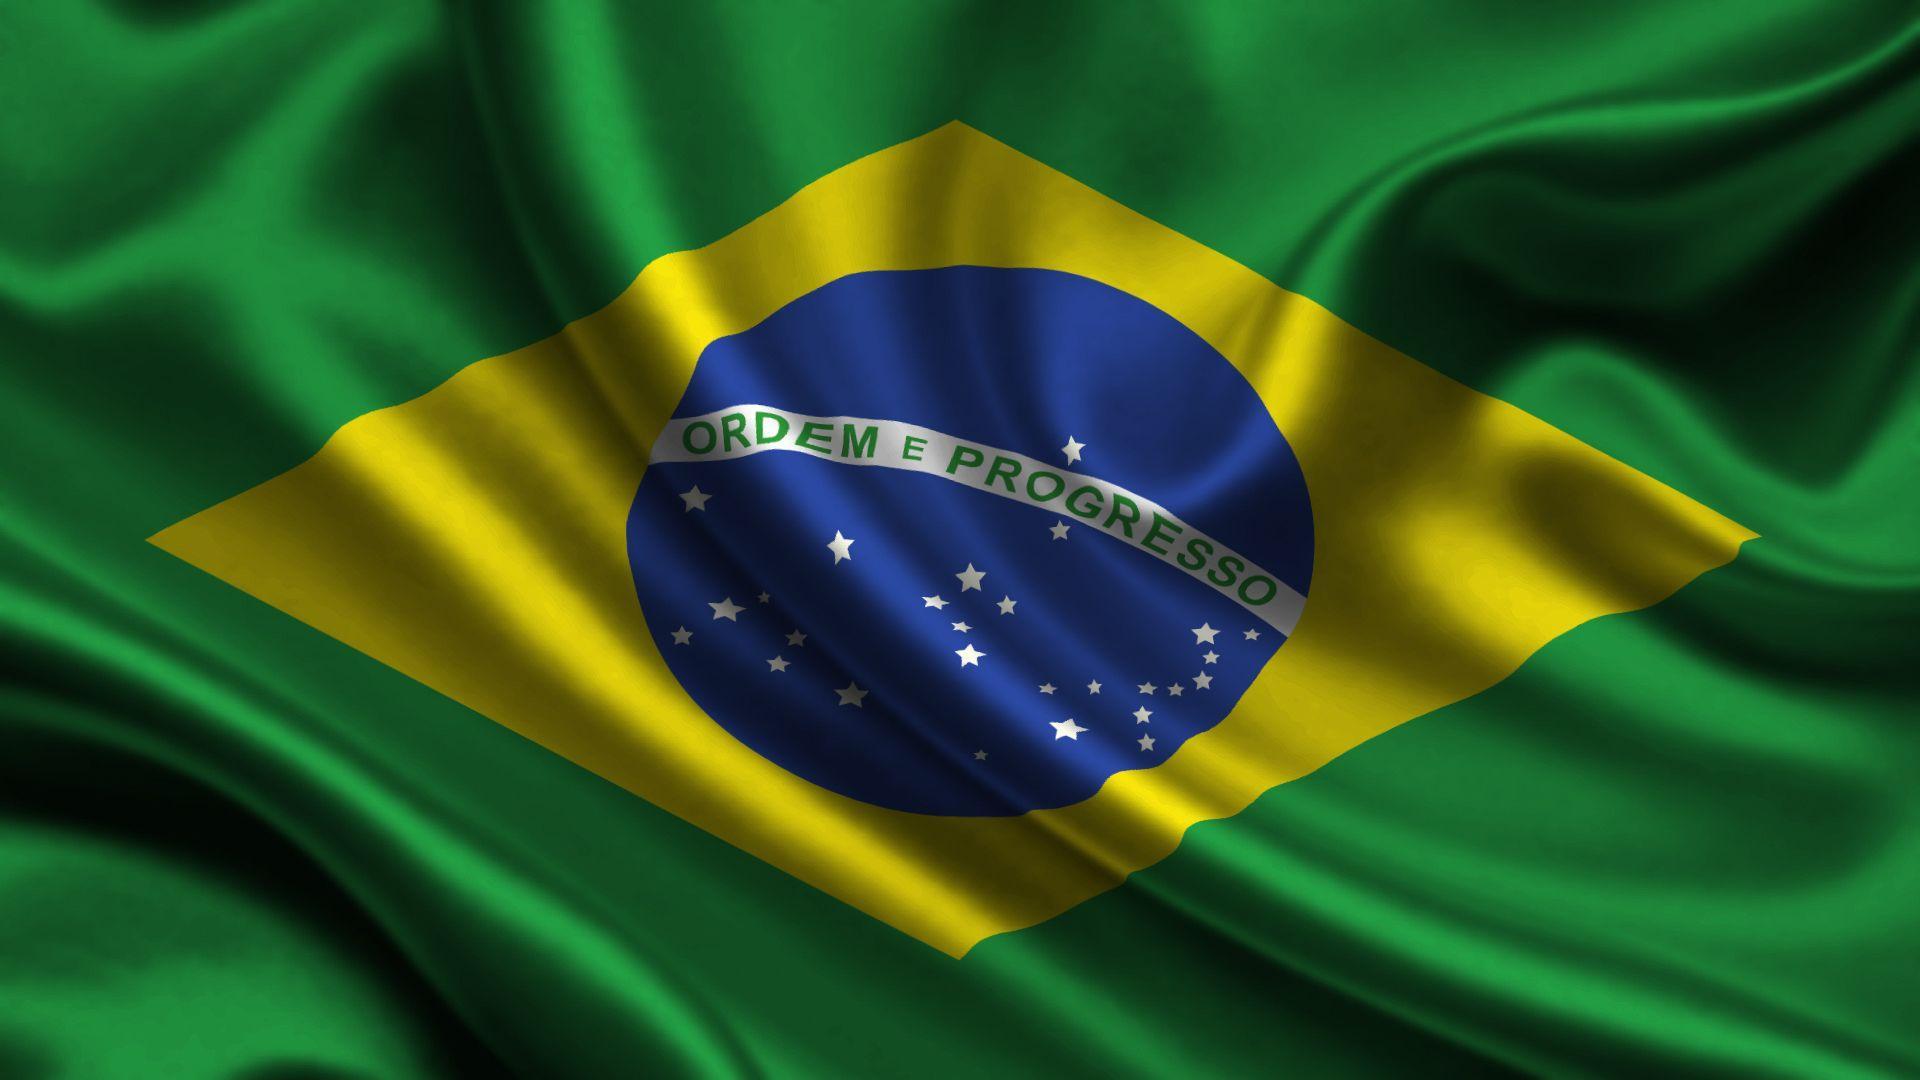 Det gör att EWZ är en av de landspecifika börshandlade fonder som har utvecklats absolut bäst under året. Många räknar med att de olympiska spelen i Rio de Janeiro kommer att elda aktiemarknaden ytterligare. Andra säger att det är dags att blanka den brasilianska aktiemarknaden.